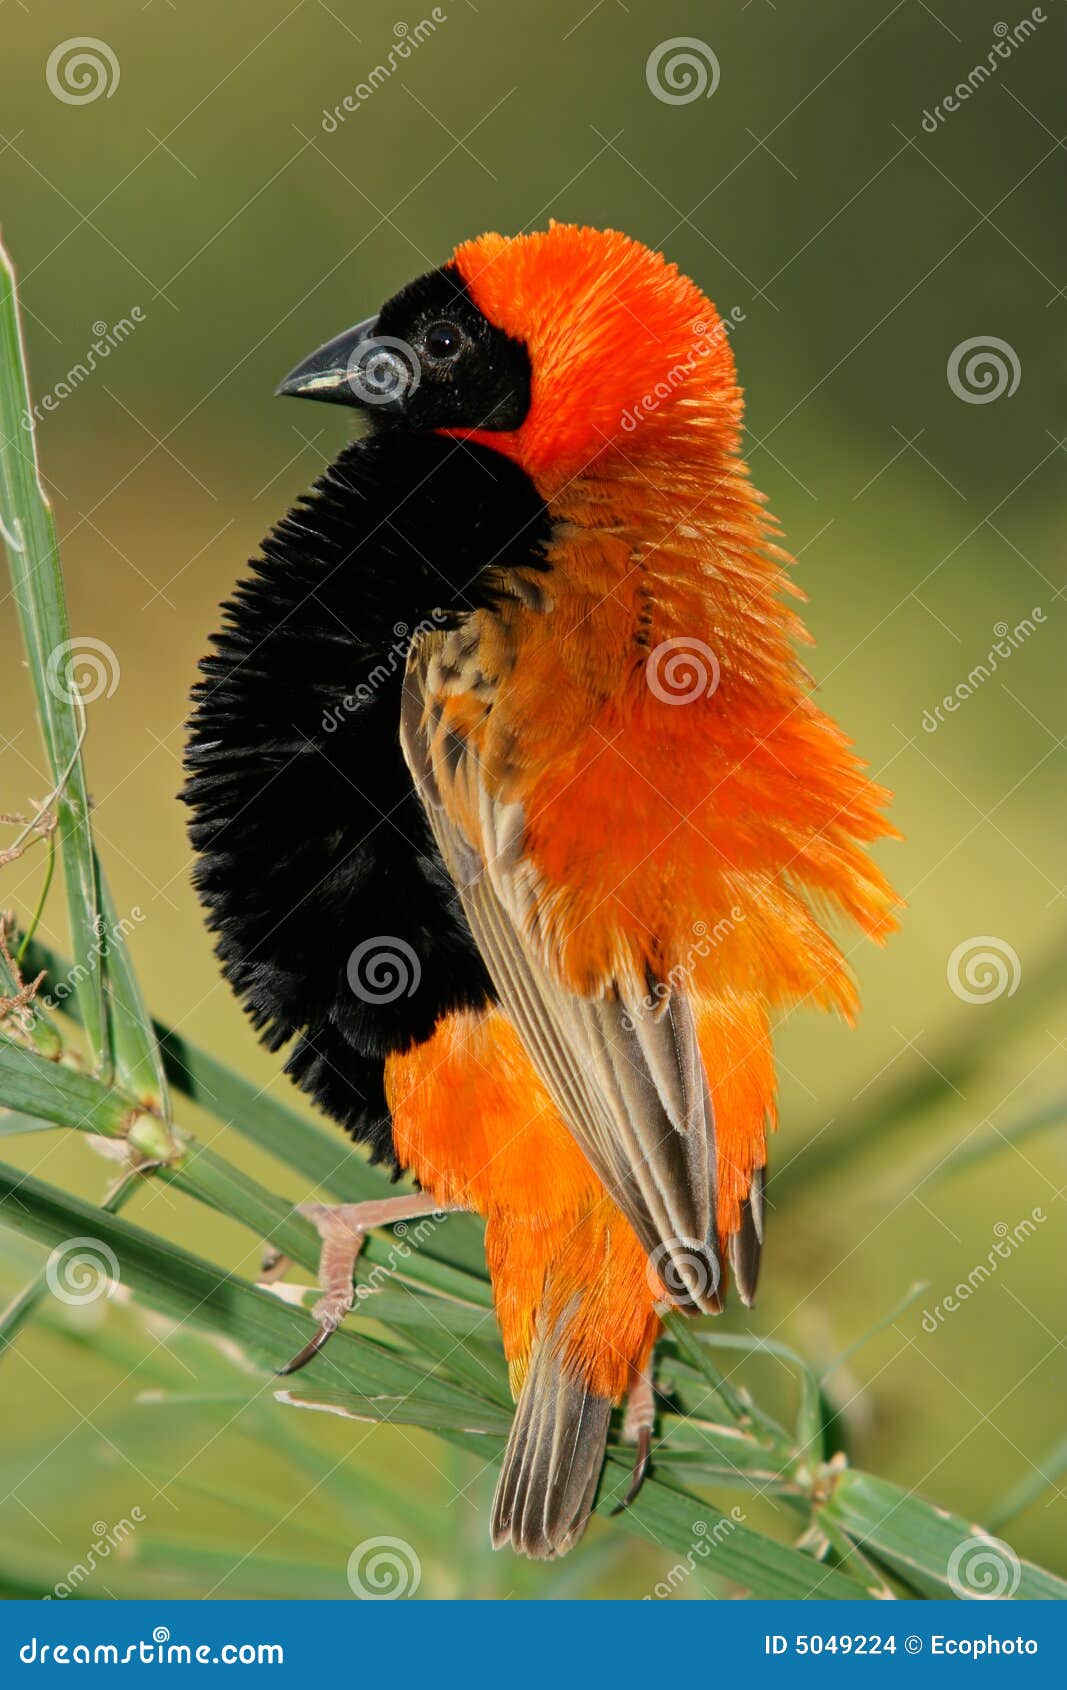 male red bishop bird